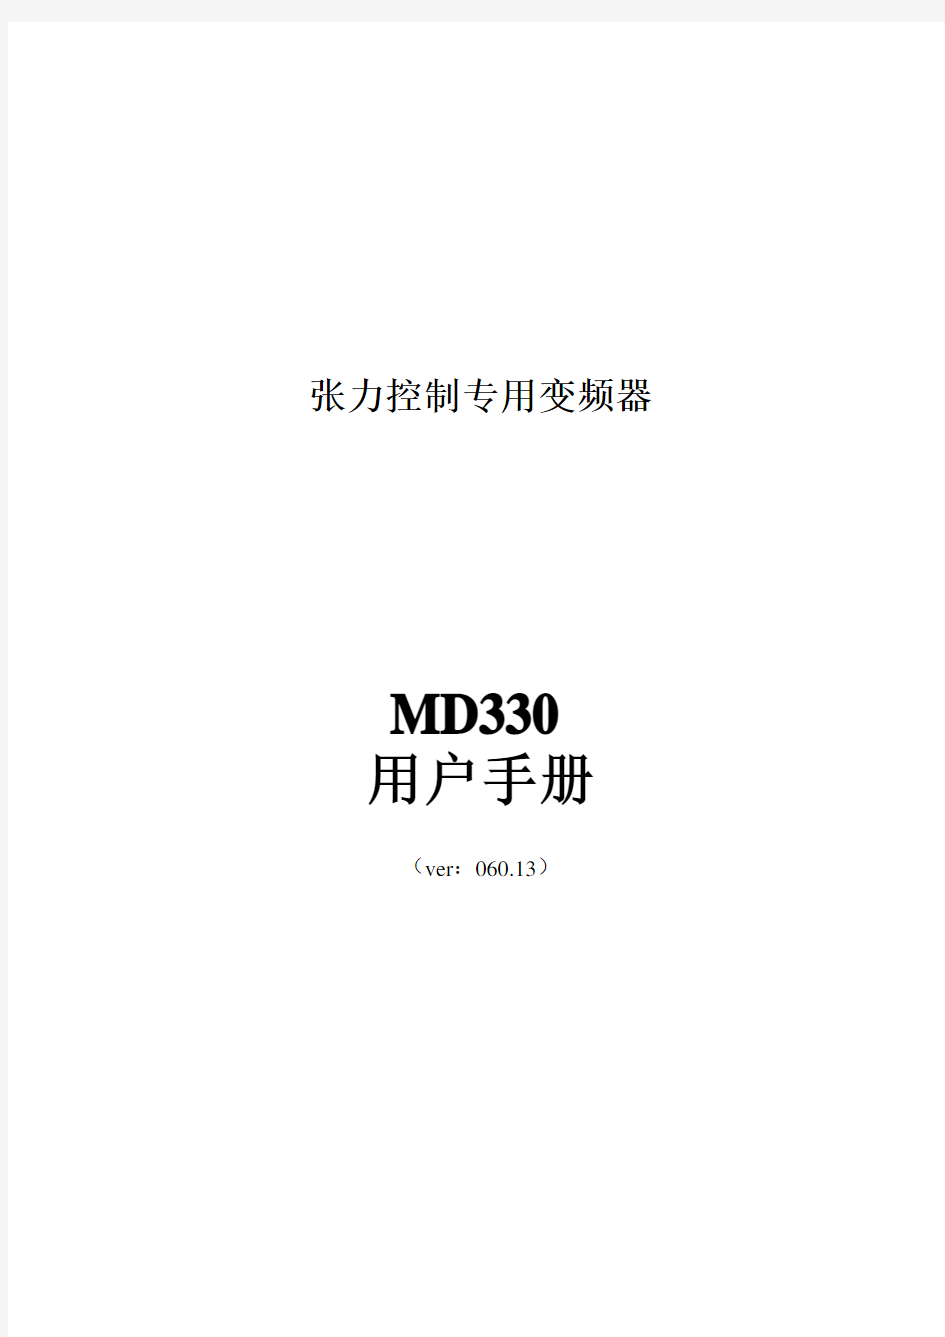 汇川MD330变频器说明书(新)